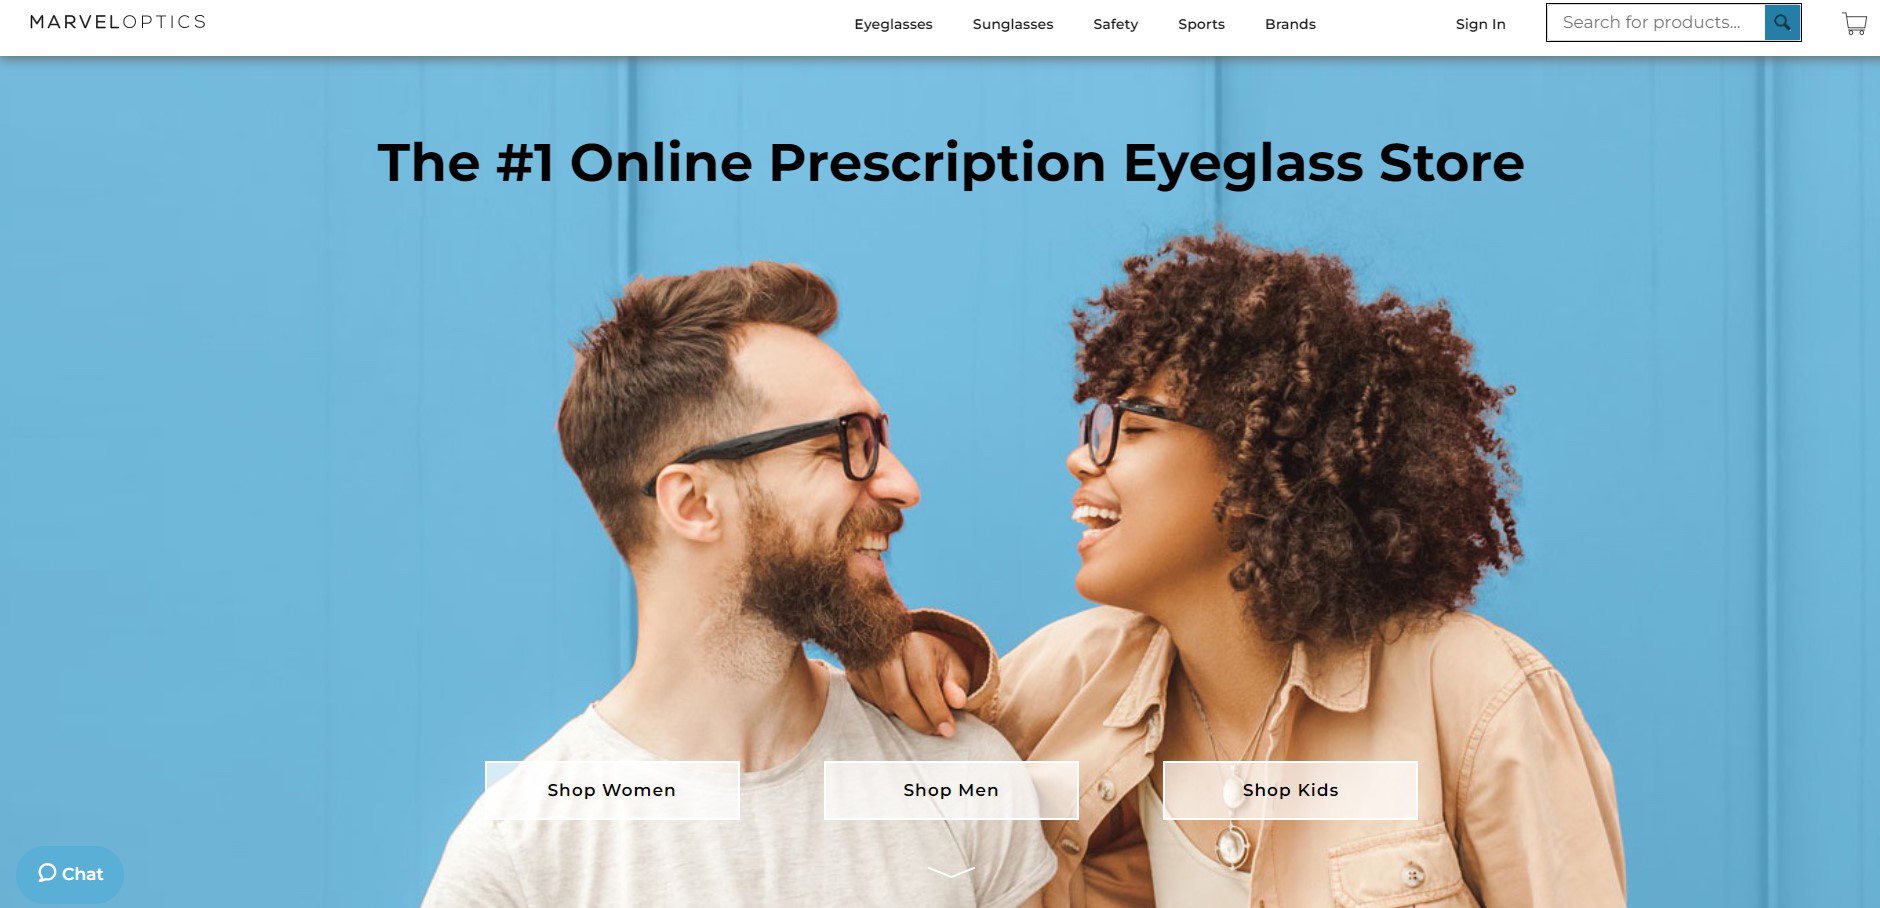 marveloptics.com - Online Prescription Eyeglass Store